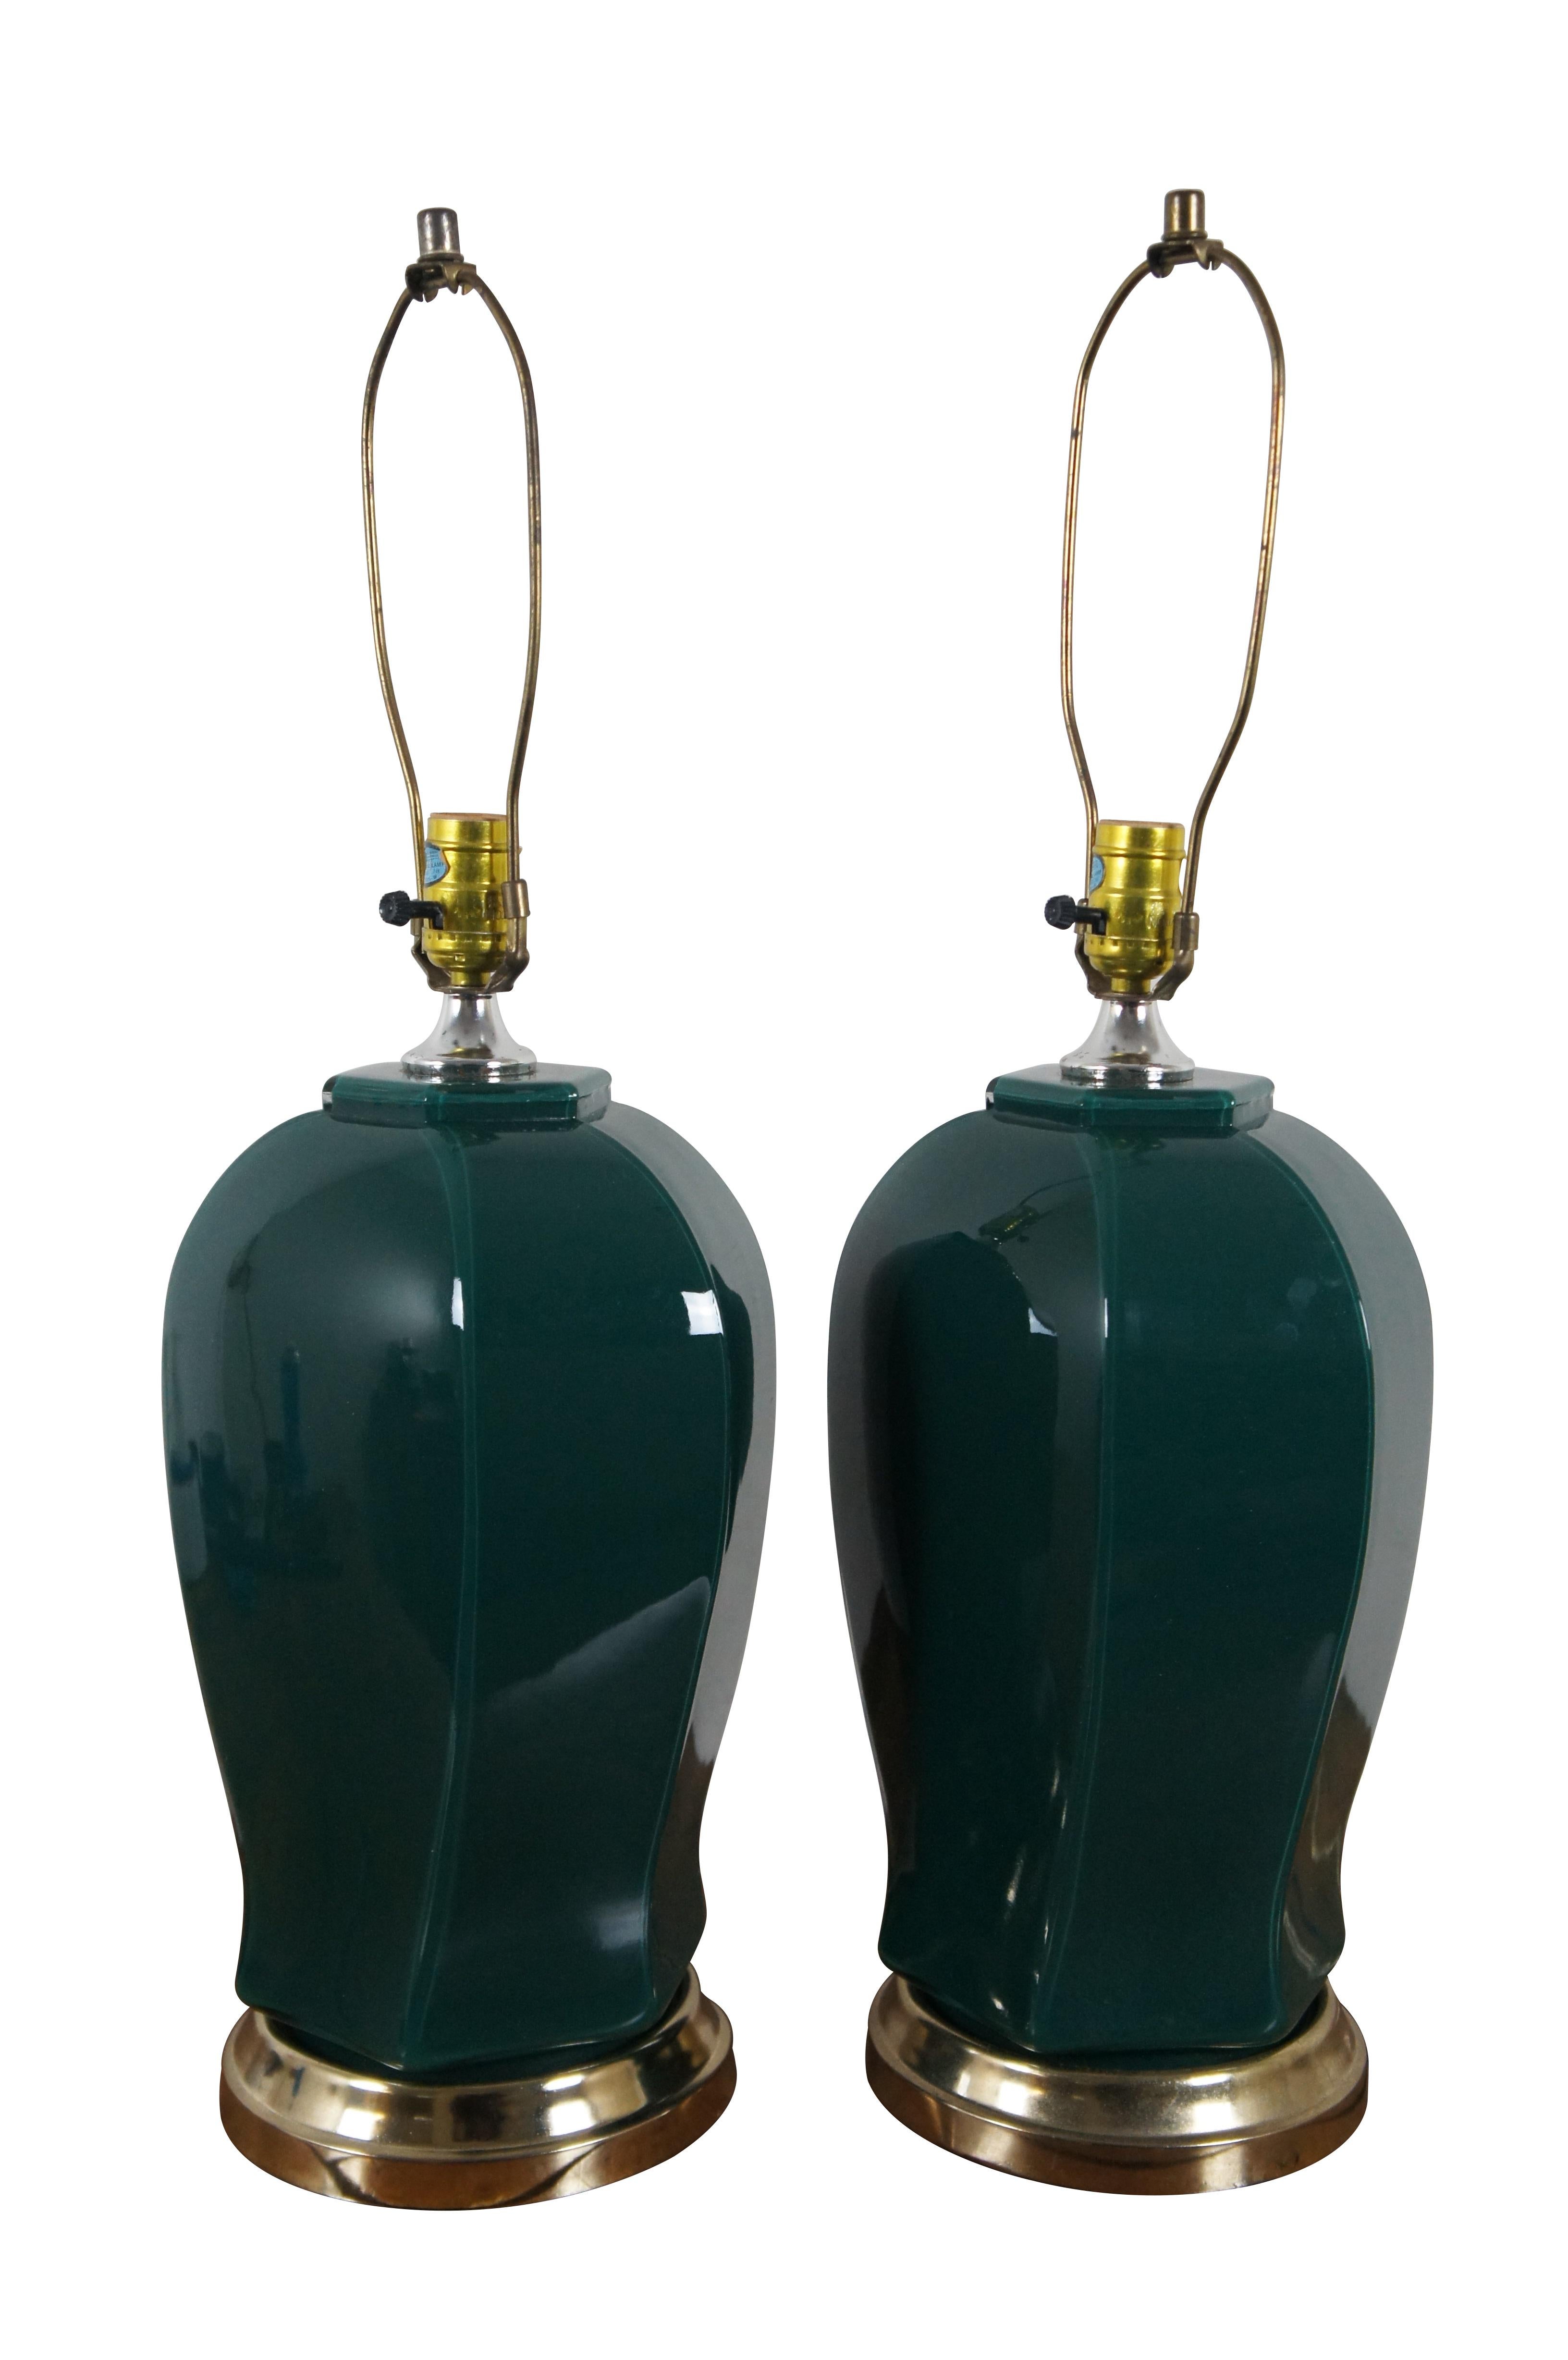 Paire de lampes de table en verre du milieu du 20e siècle, peintes à l'envers en vert forêt, avec des bases en laiton et un corps unique en forme de pot de gingembre / d'urne à facettes. Comprend des épis de faîtage en forme de harpe et de capuchon